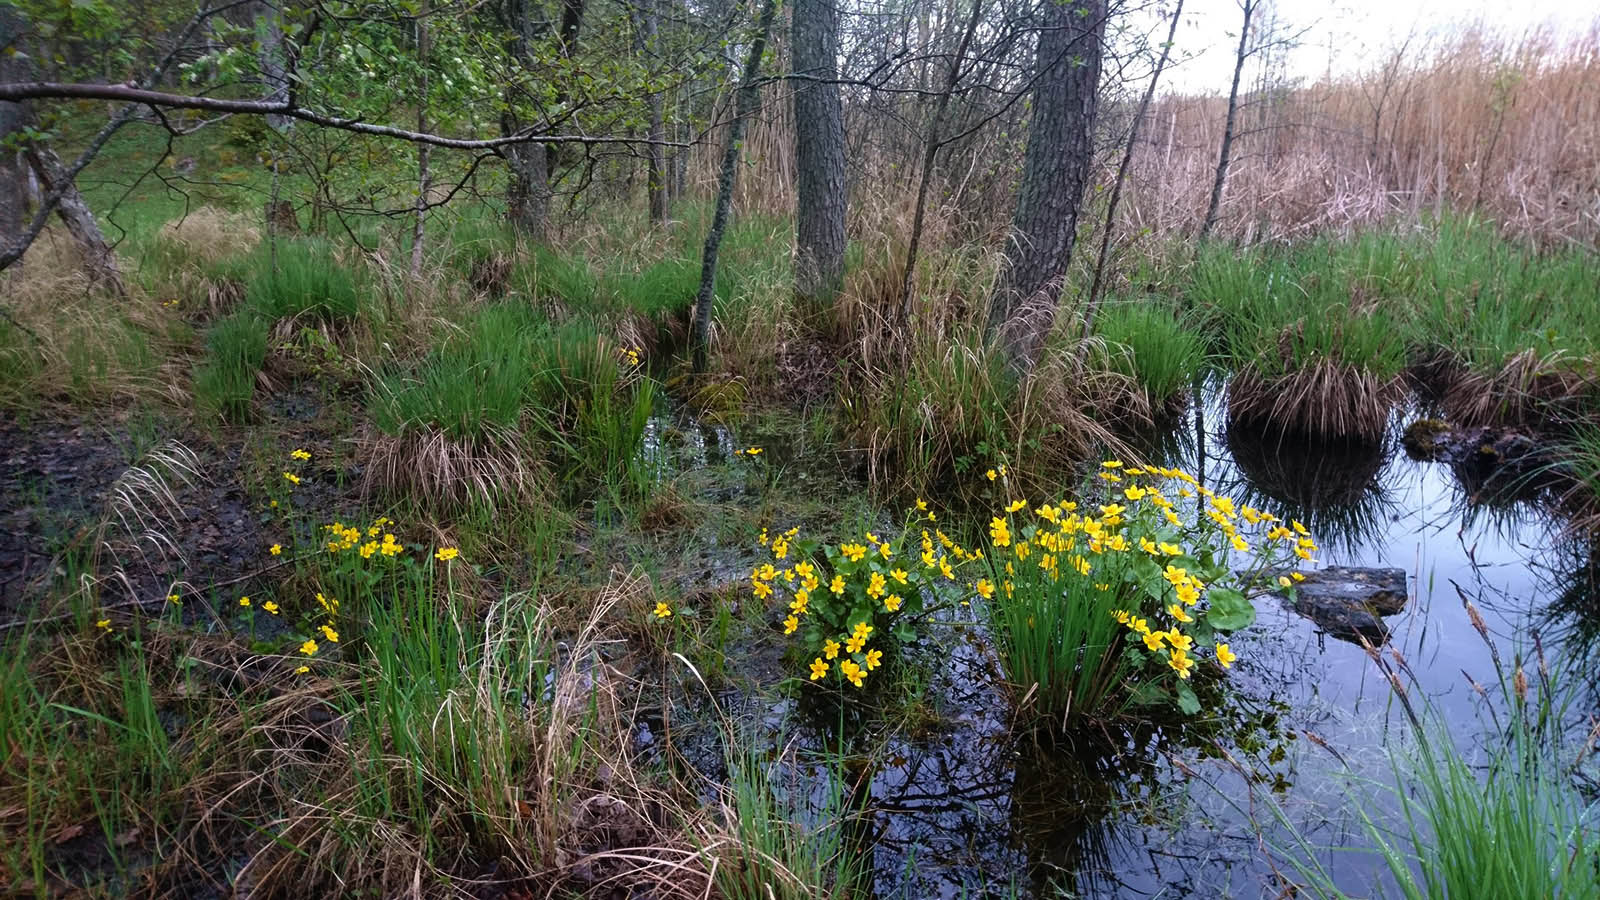 Калужница болотная (Caltha palustris) в природном парке J?rvaf?ltet, Стокгольм. Май 2020 года. Автор фото: Сутормина Марина